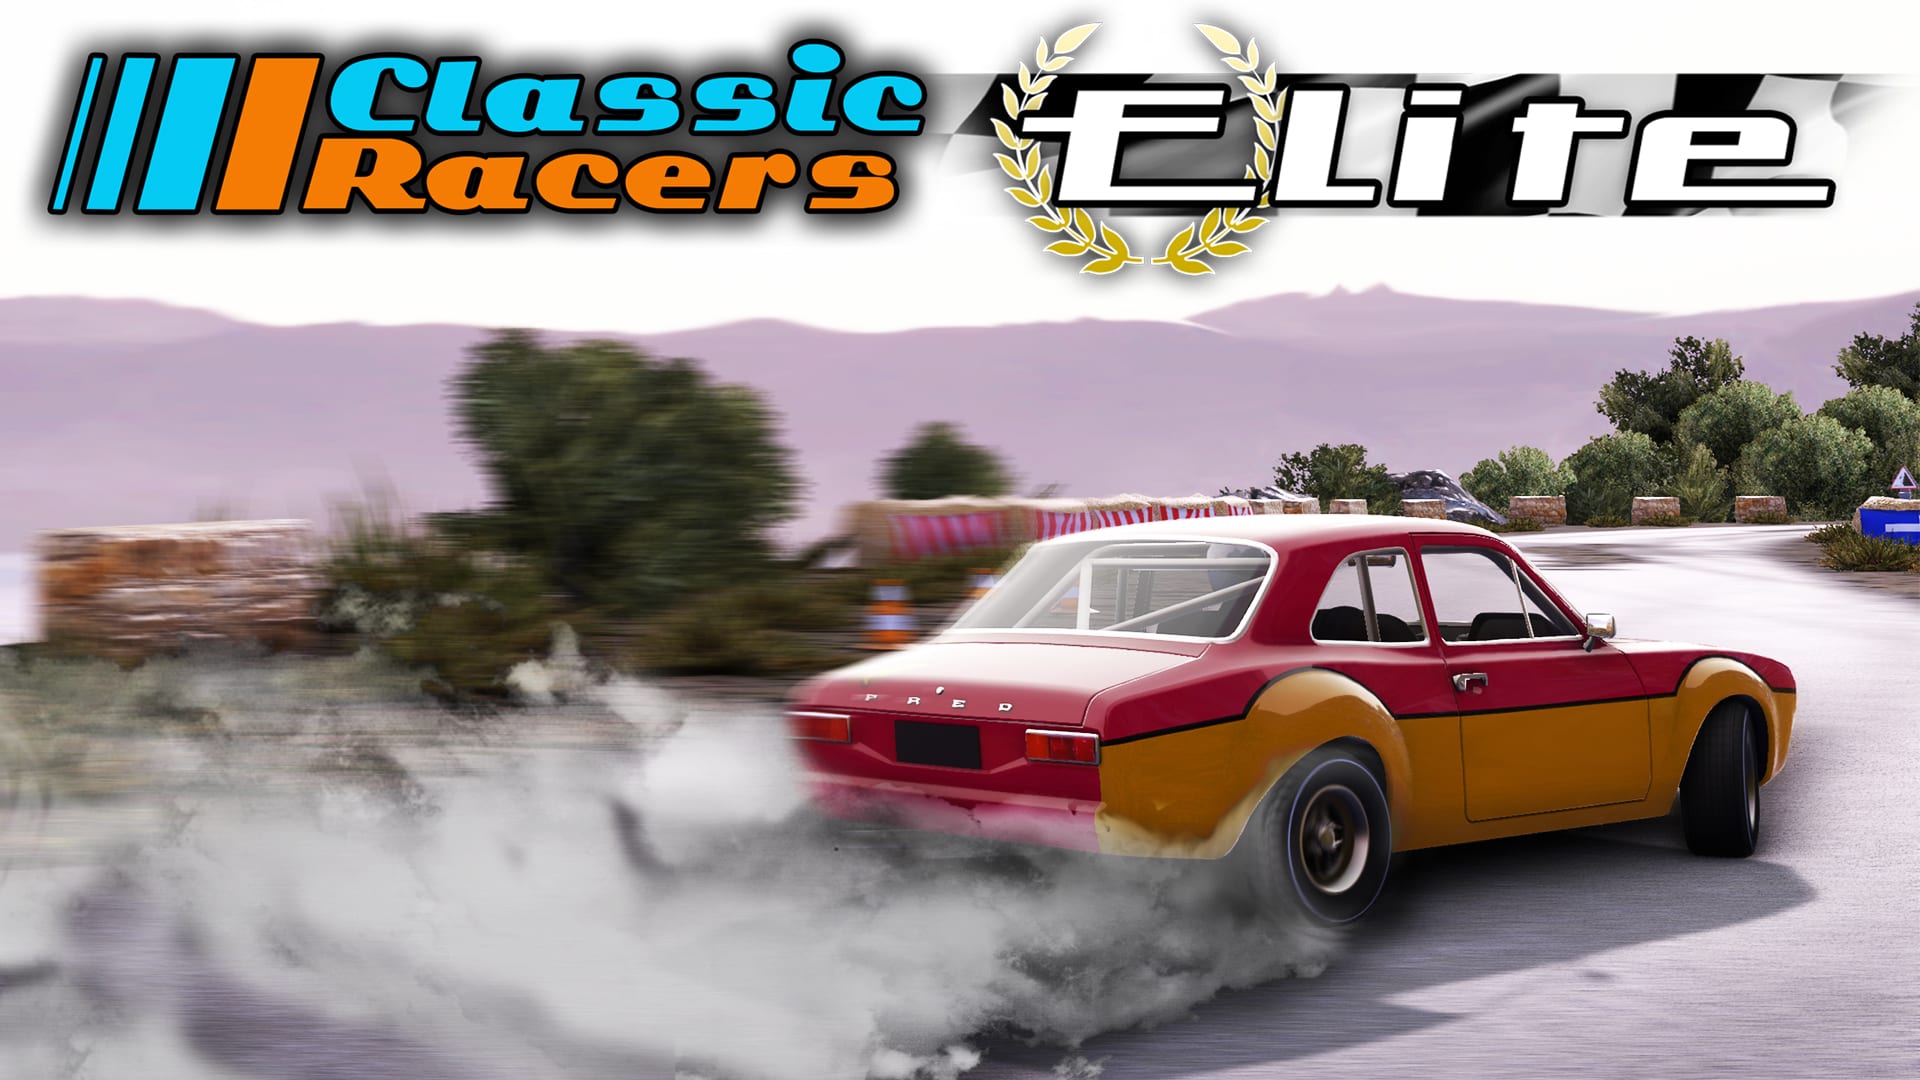 Classic Racers Elite 1